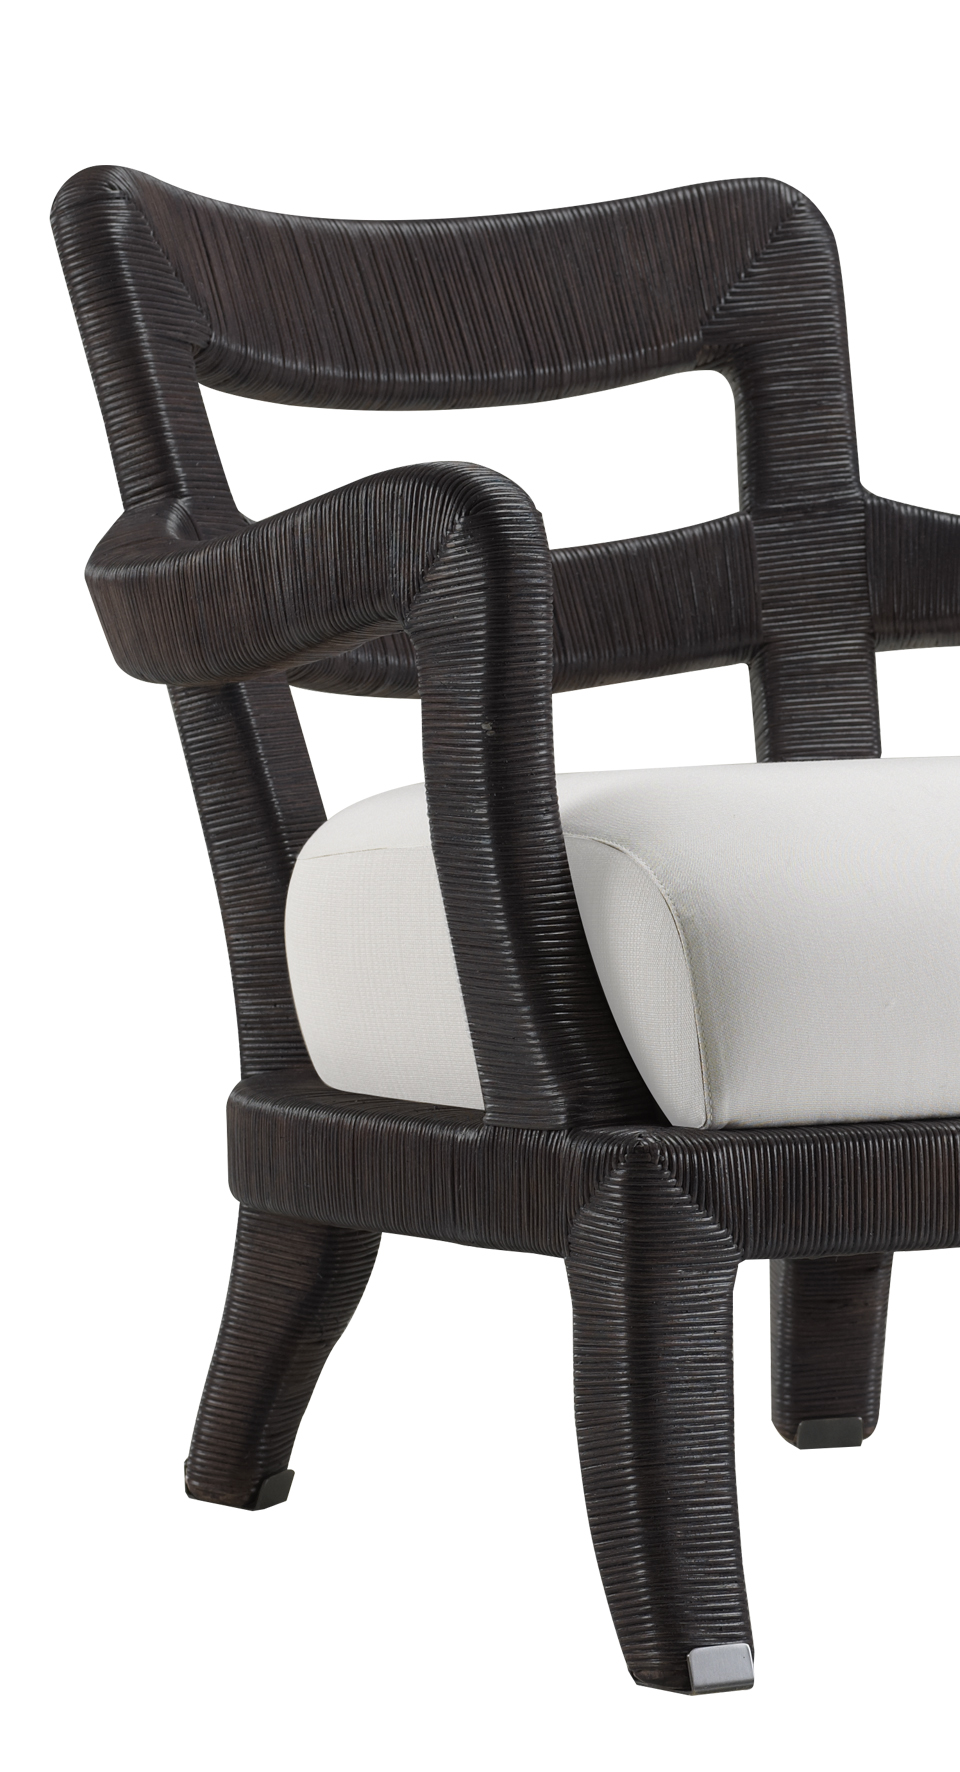 Topazia est un fauteuil de jardin en bois, avec revêtement en tissu et finitions en bronze. Ce meuble figure dans le catalogue de mobilier de jardin Promemoria | Promemoria